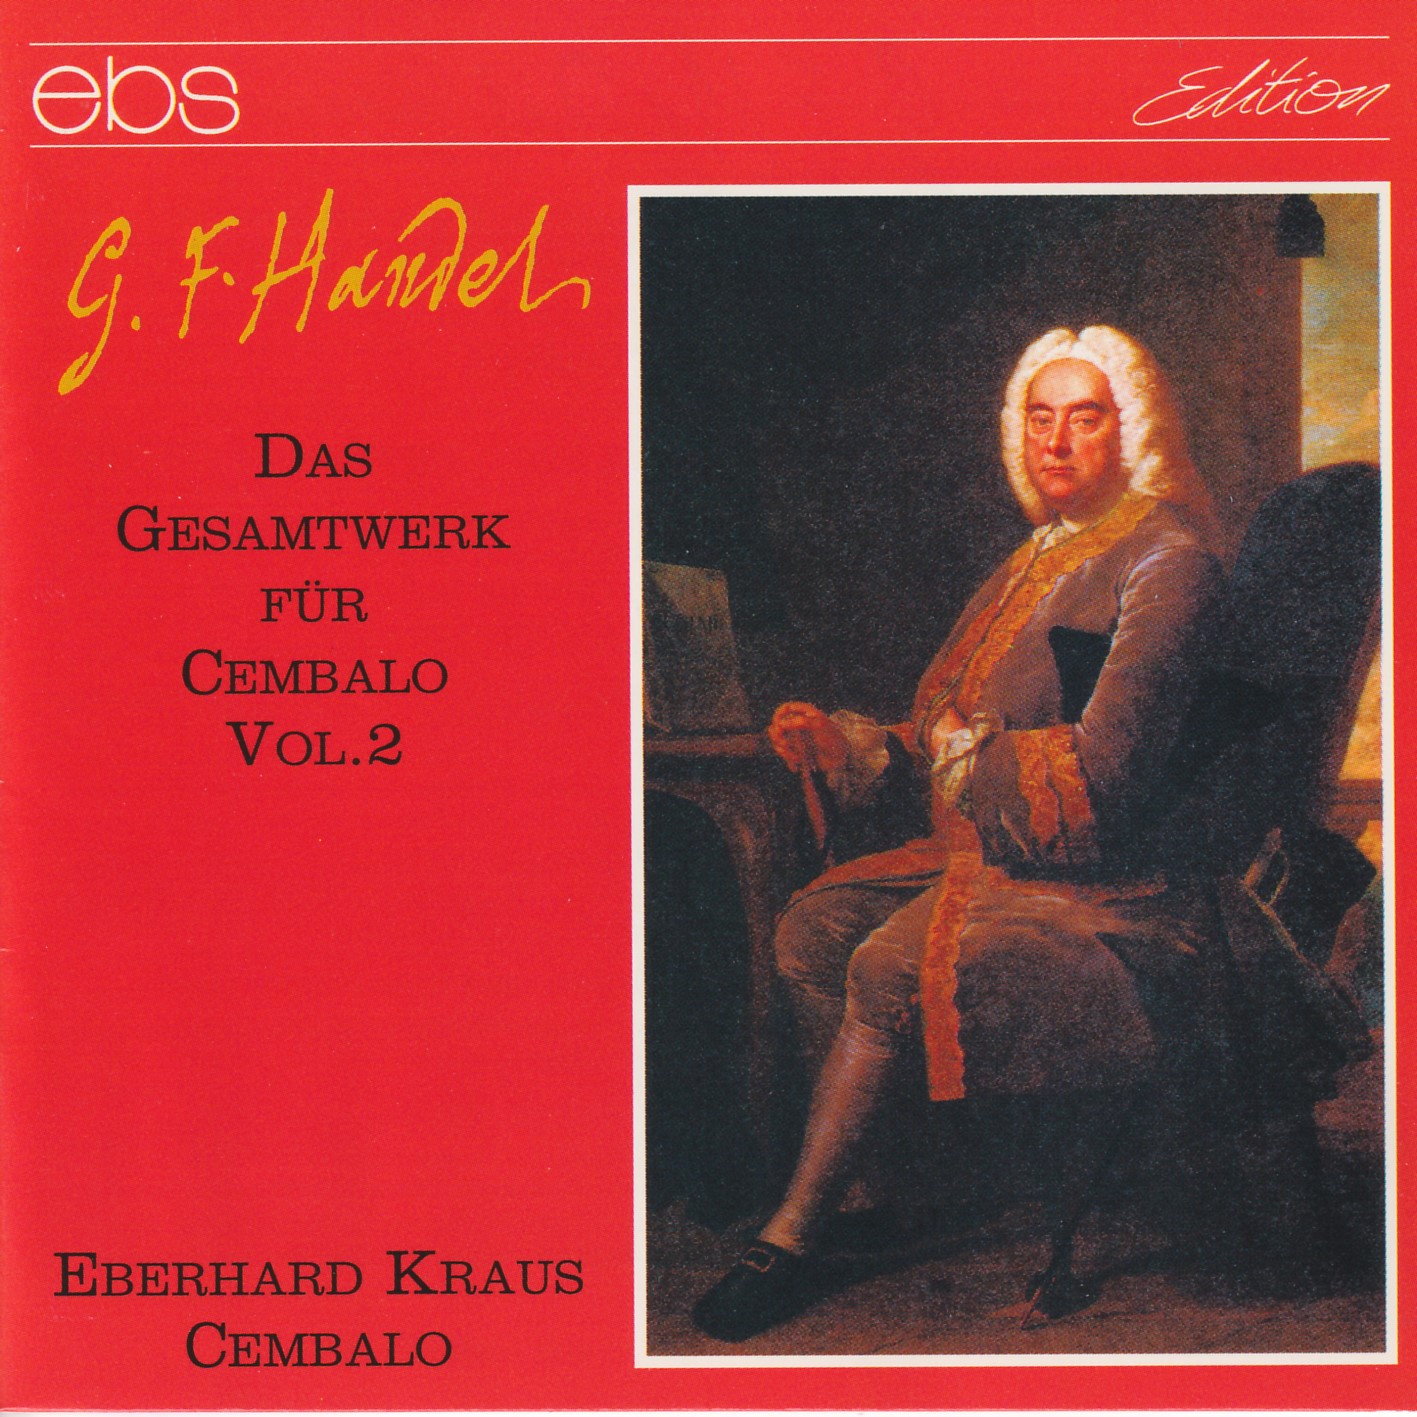 Georg Friedrich Händel - Das Cembalowerk Vol.2